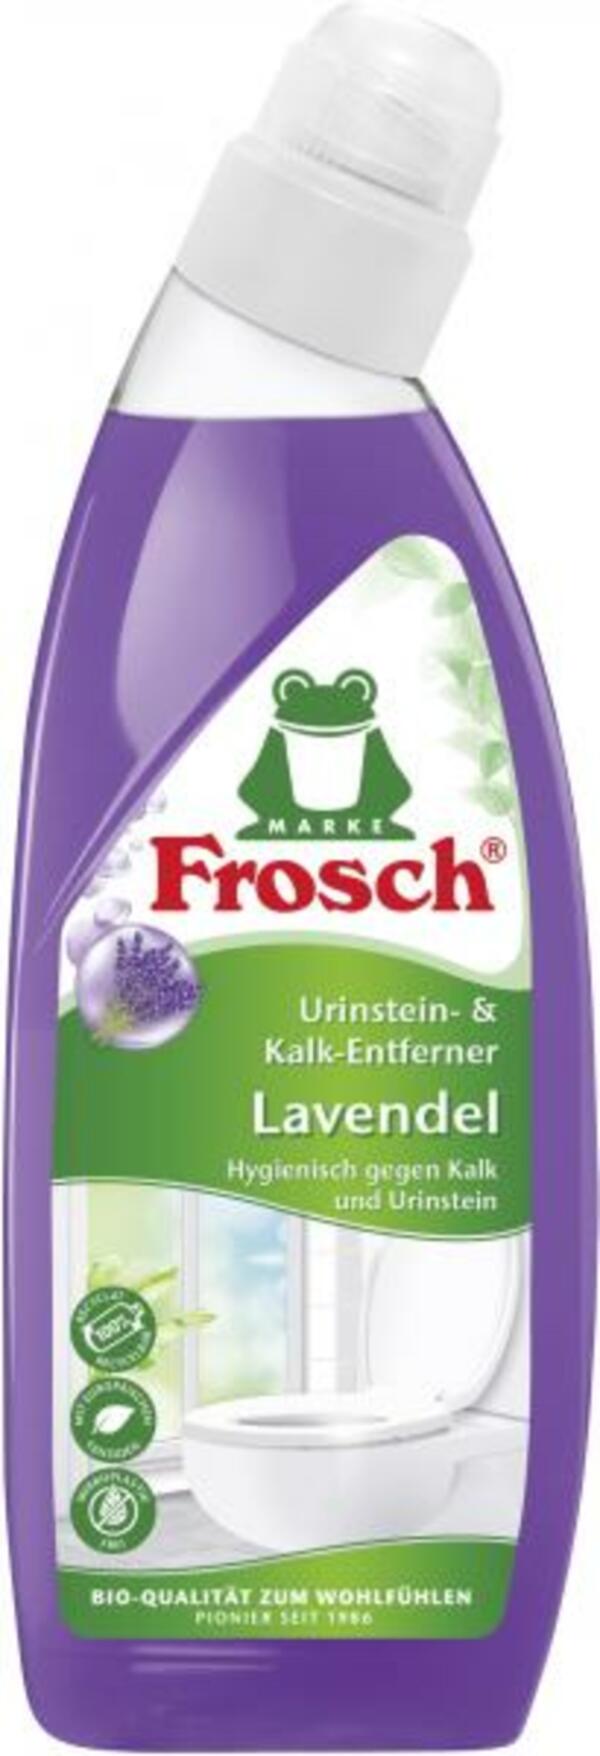 Bild 1 von Frosch Urinstein- und Kalk-Entferner Lavendel